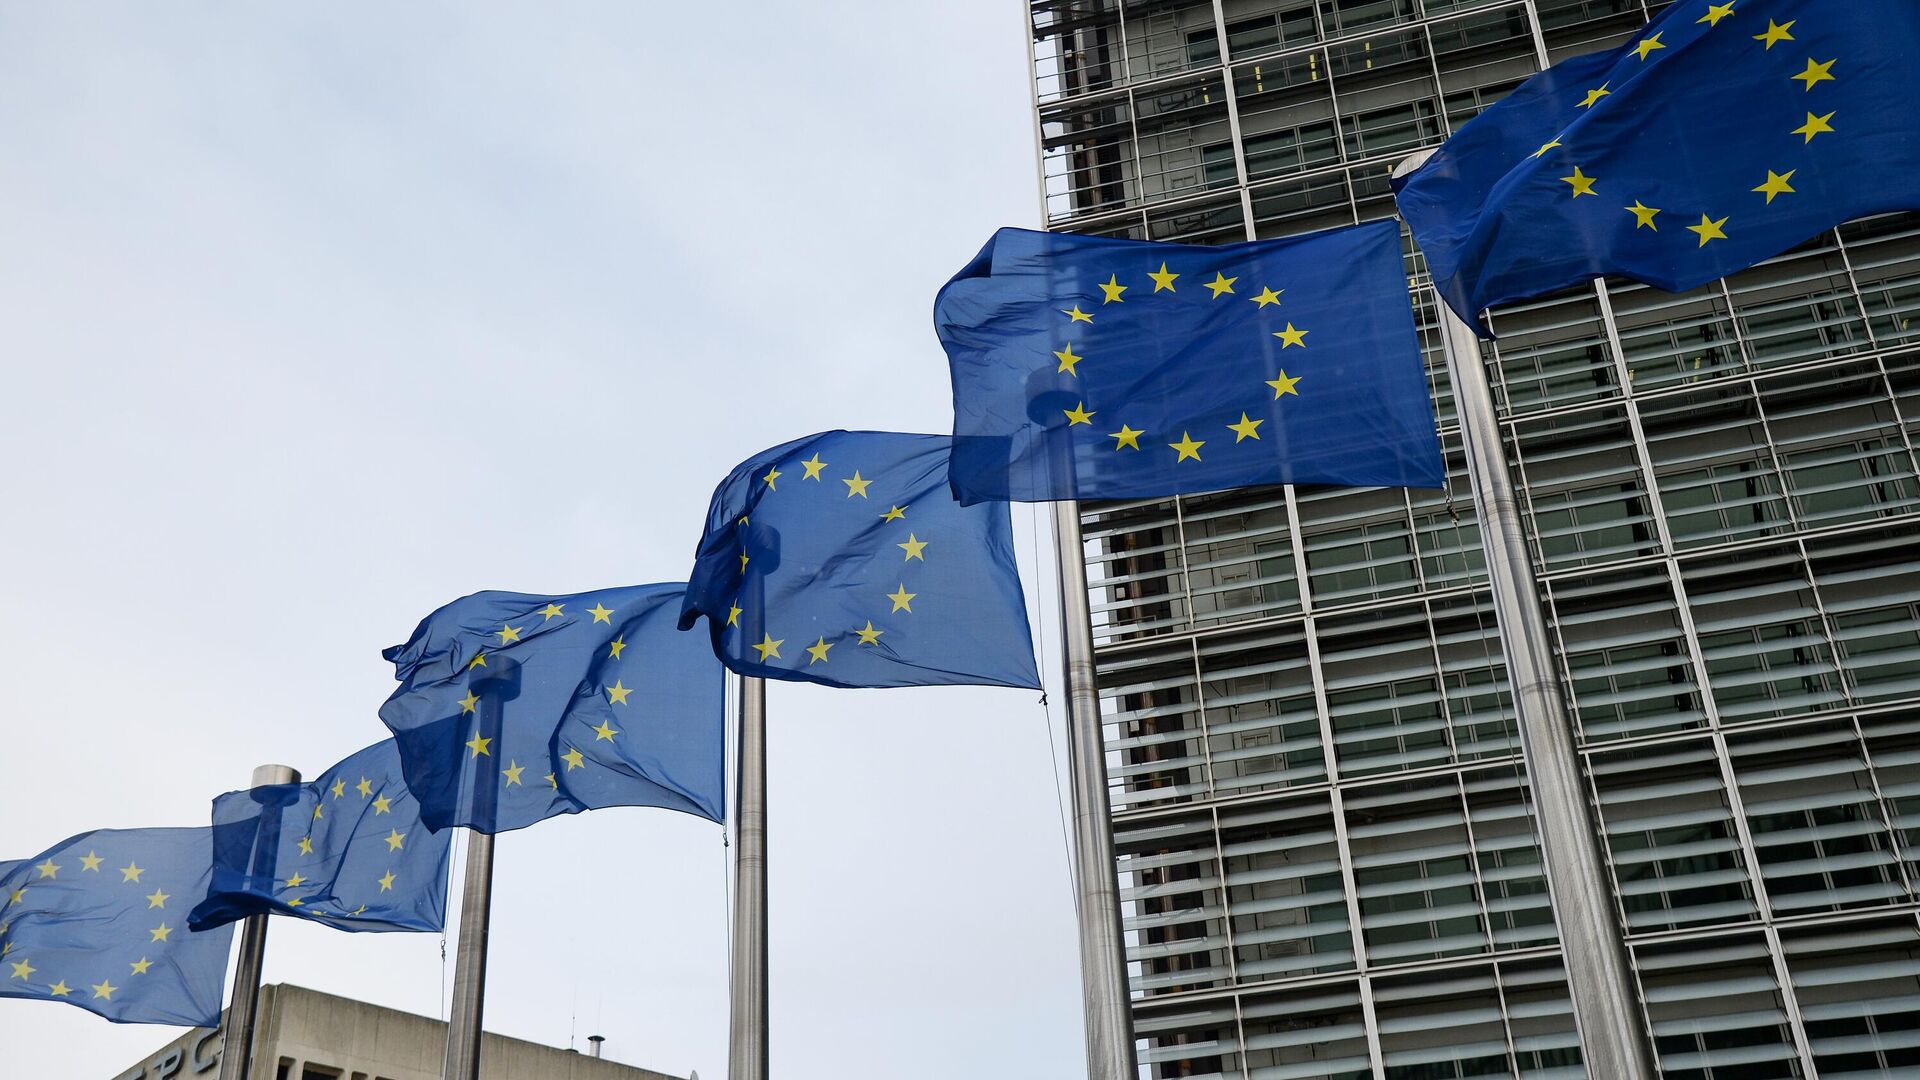 Флаги Евросоюза возле здания штаб-квартиры Европейского парламента в Брюсселе - РИА Новости, 1920, 06.12.2021